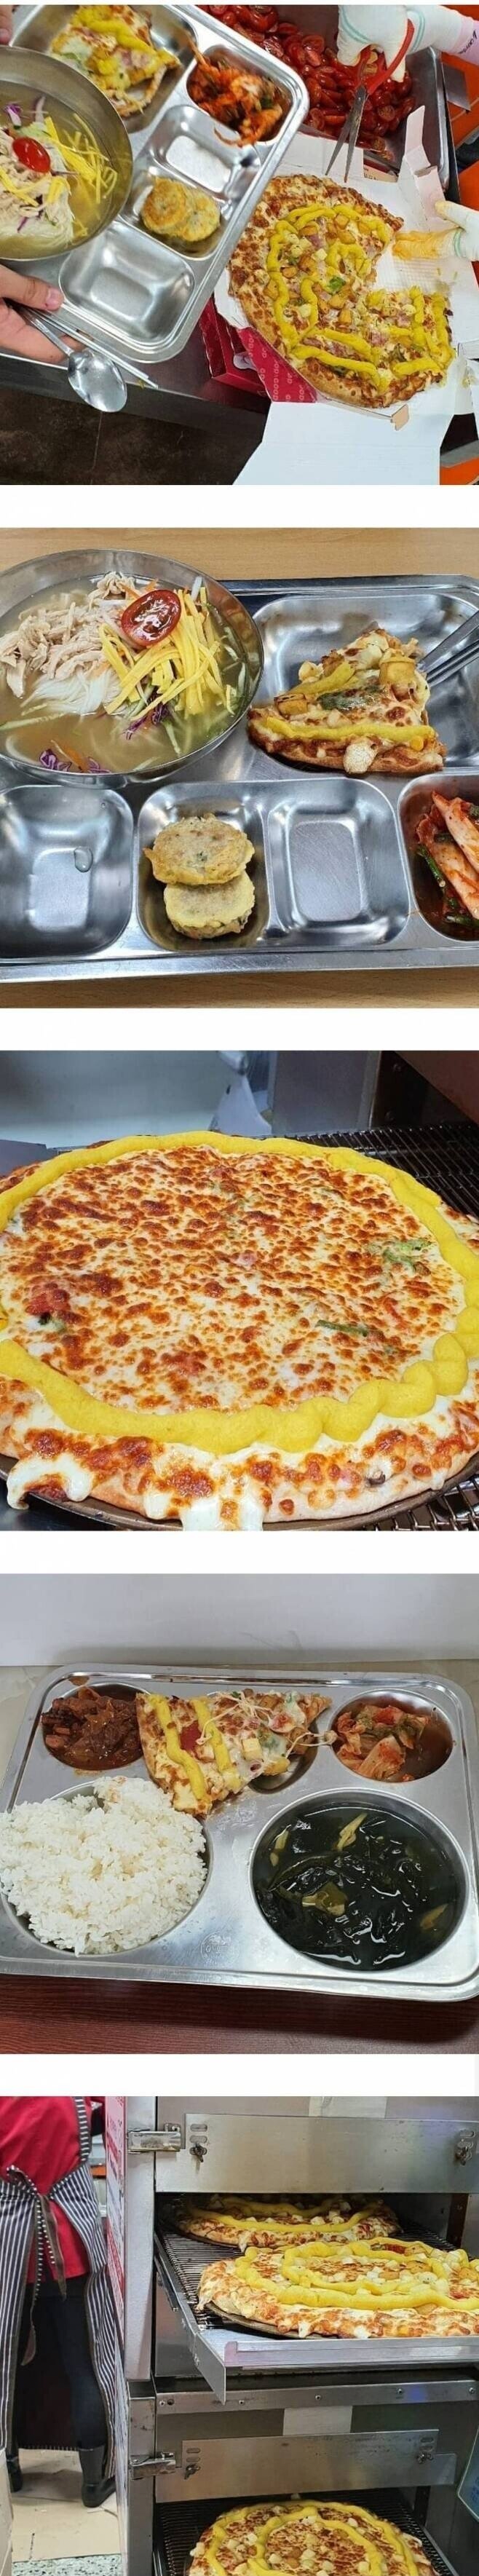  사립학교 급식에 나온 피자